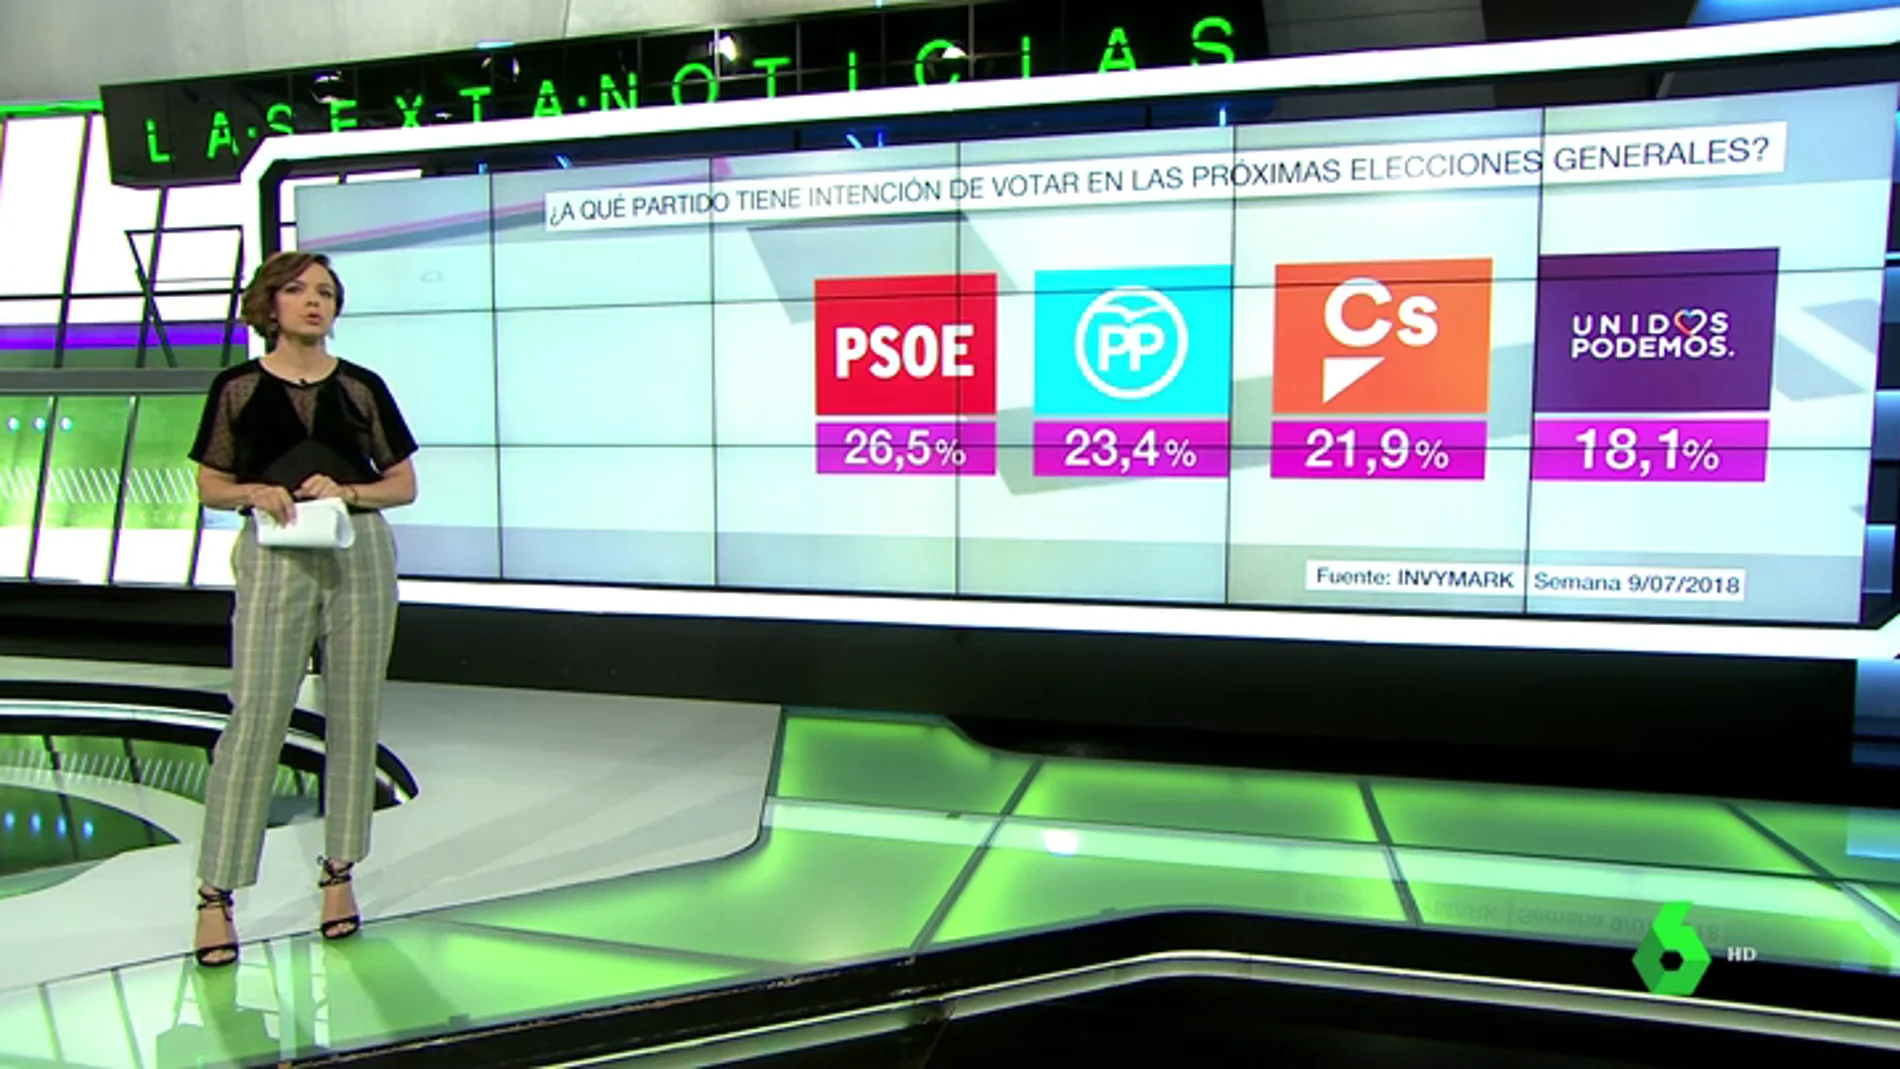 El PP se consolida como segunda fuerza en intención de voto en pleno proceso de primarias por detrás del PSOE